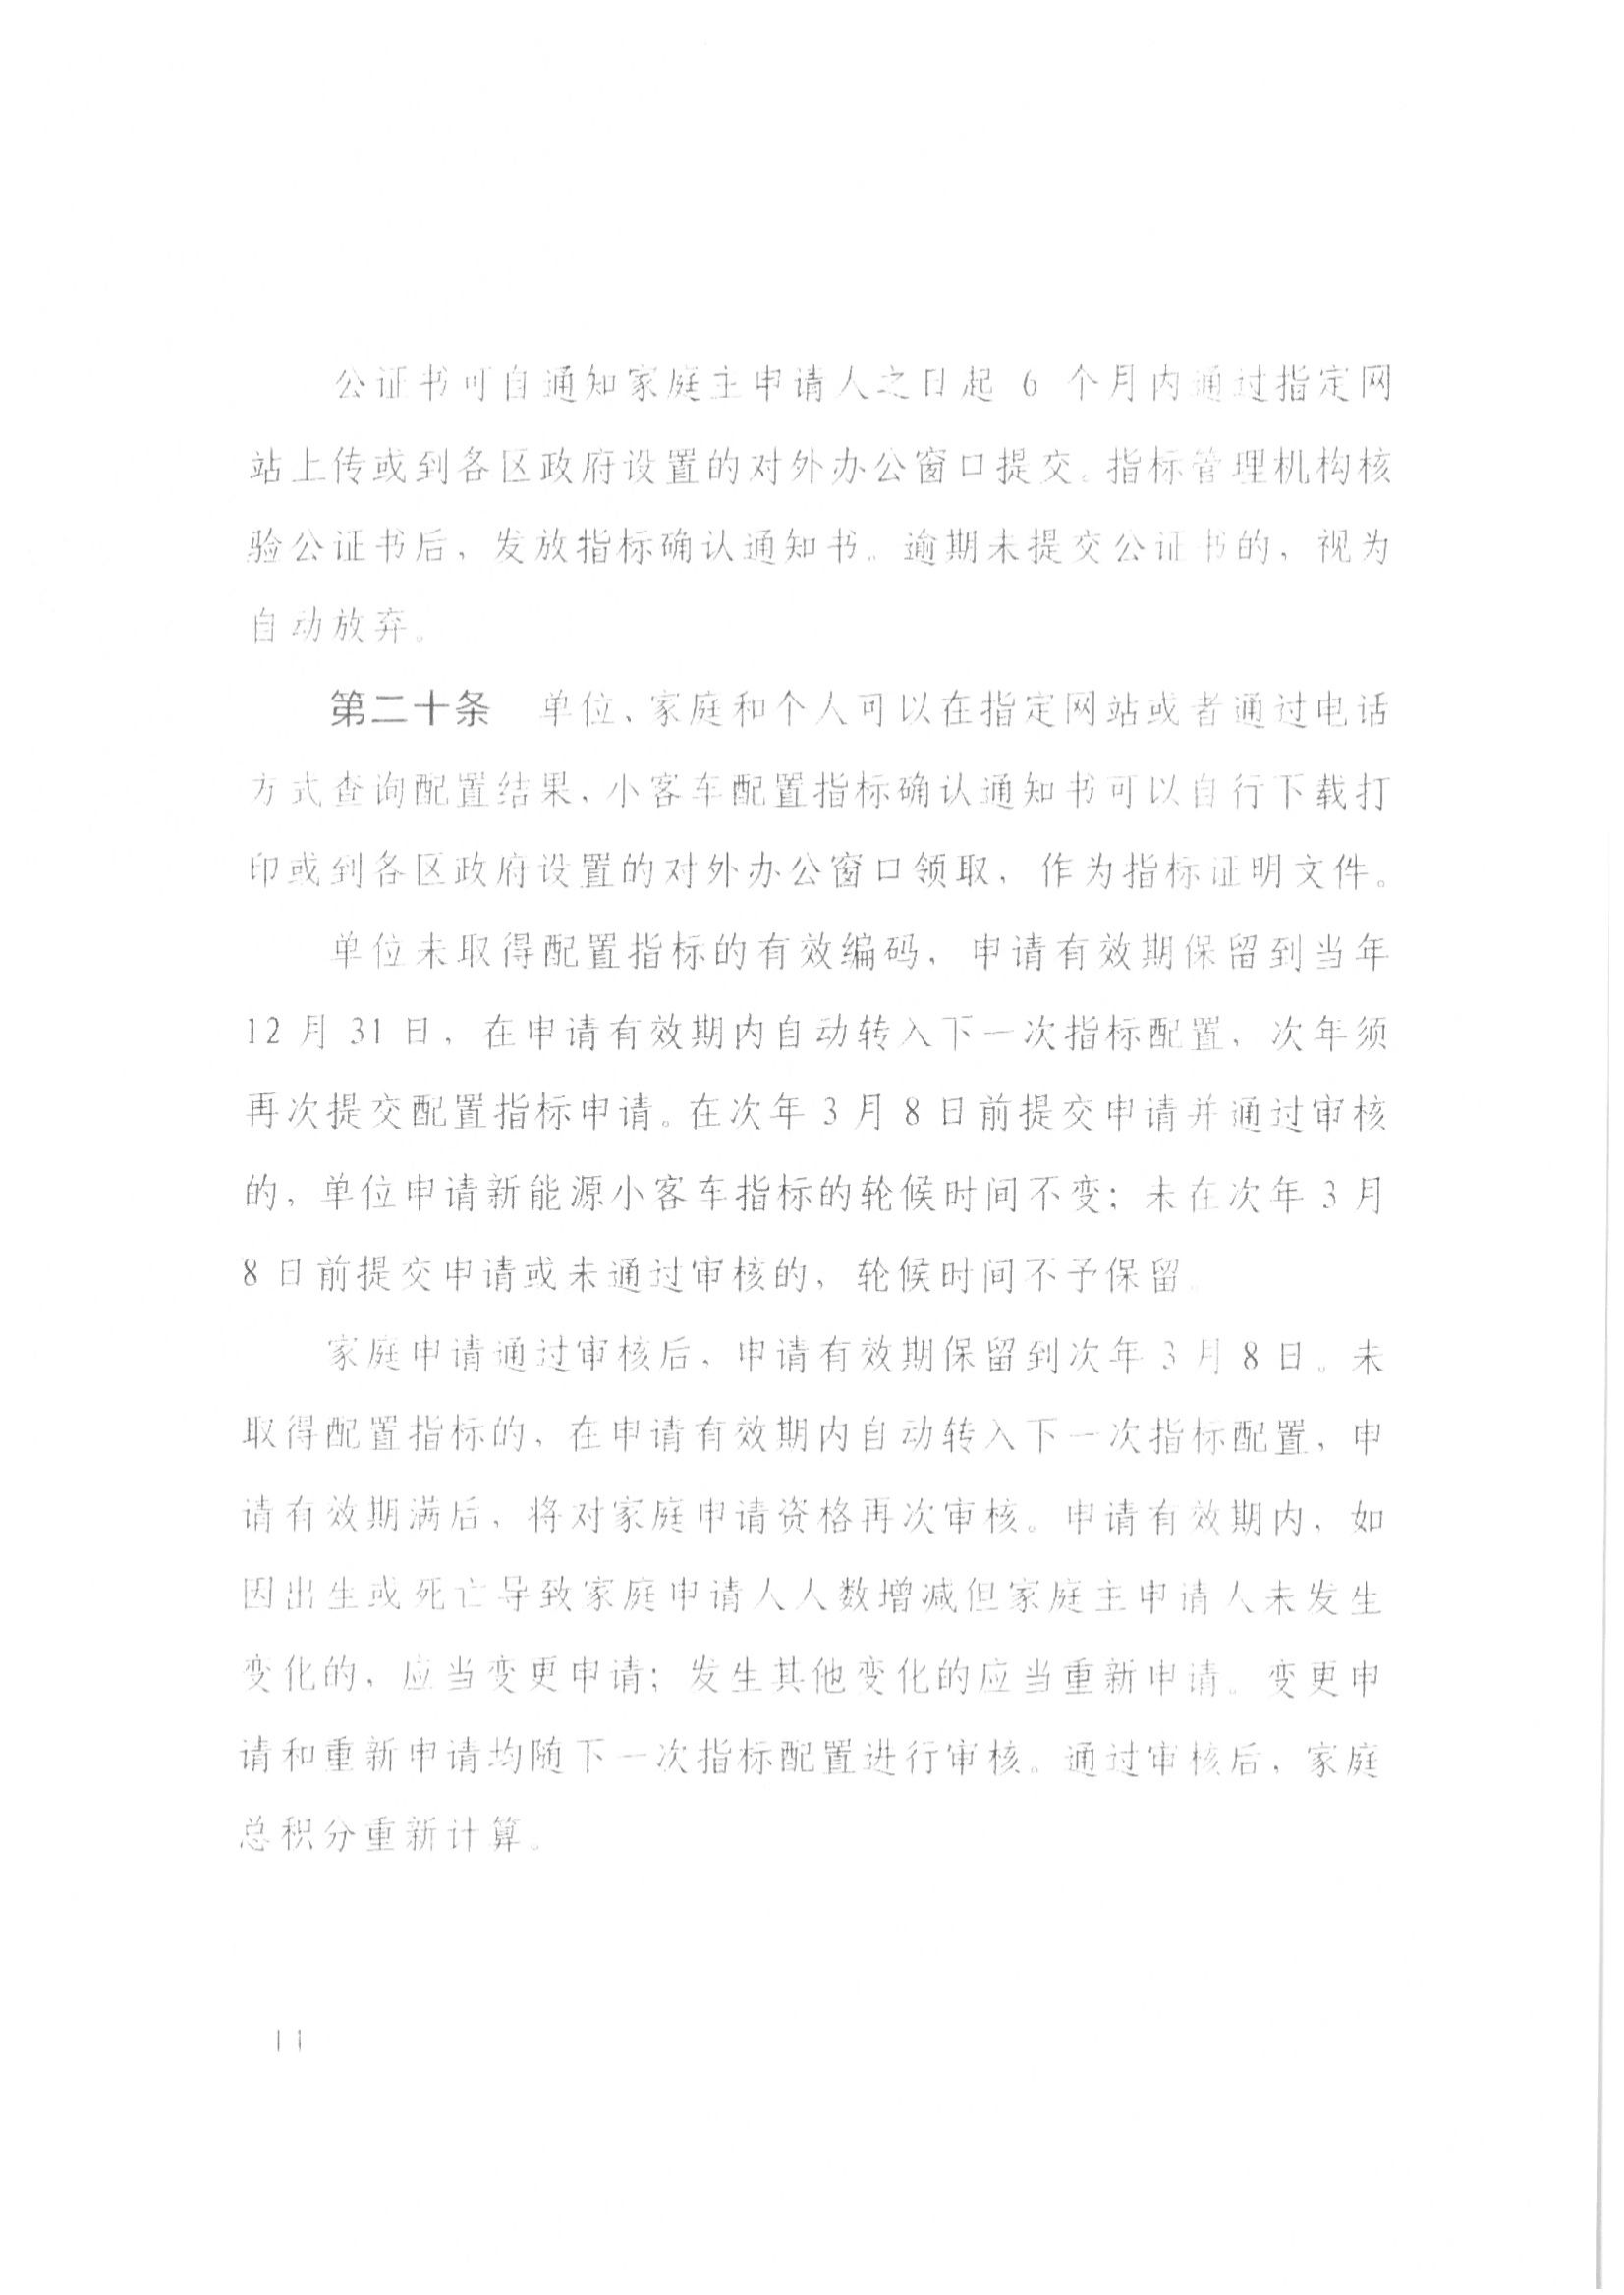 13、北京市公证协会关于印发《北京市公证协会规范执业指引》第13号的通知_36